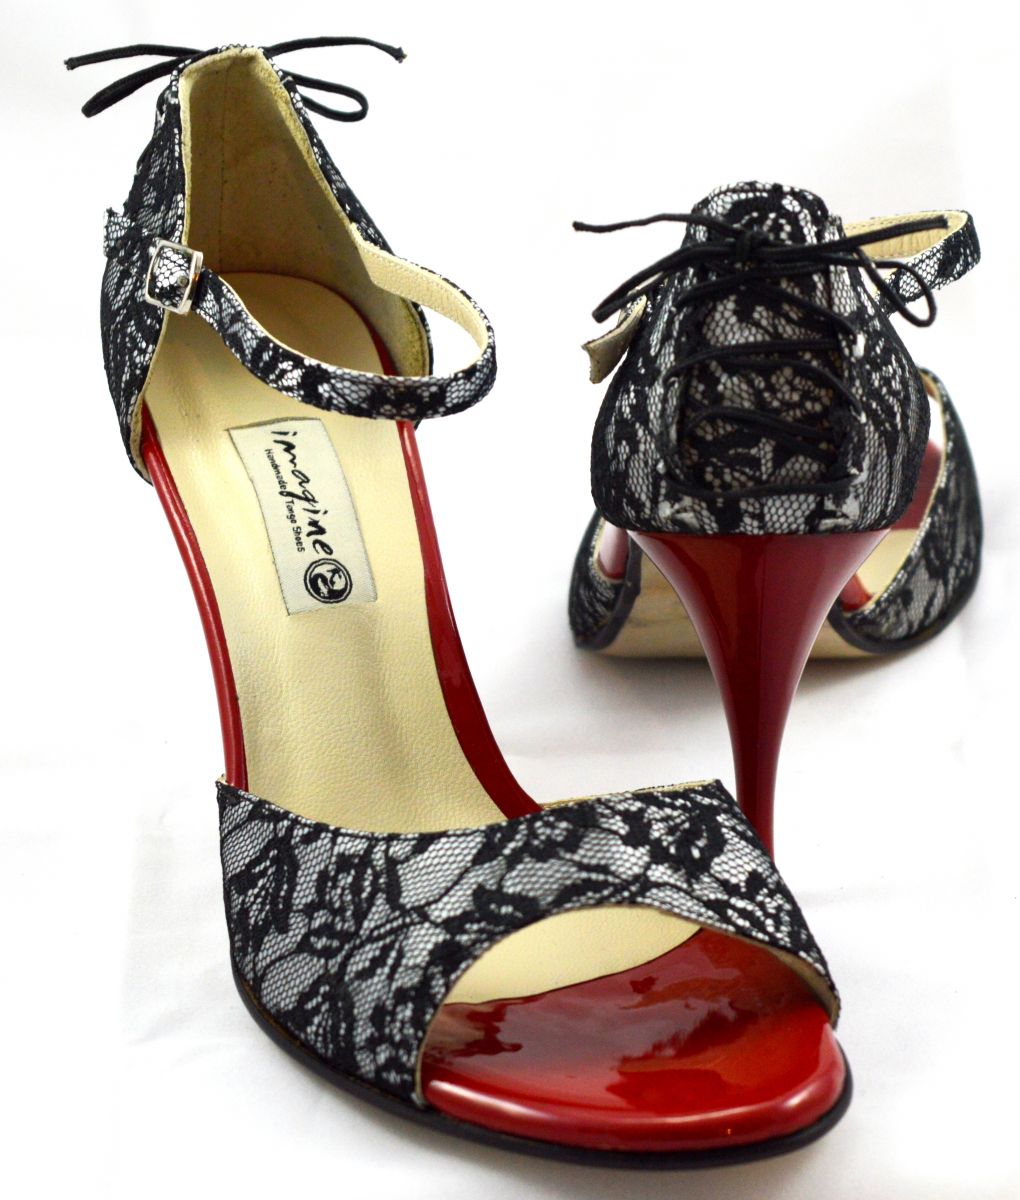 Γυναικείο παπούτσι tango open toe από μαύρη δαντέλα και κόκκινο λουστρίνι